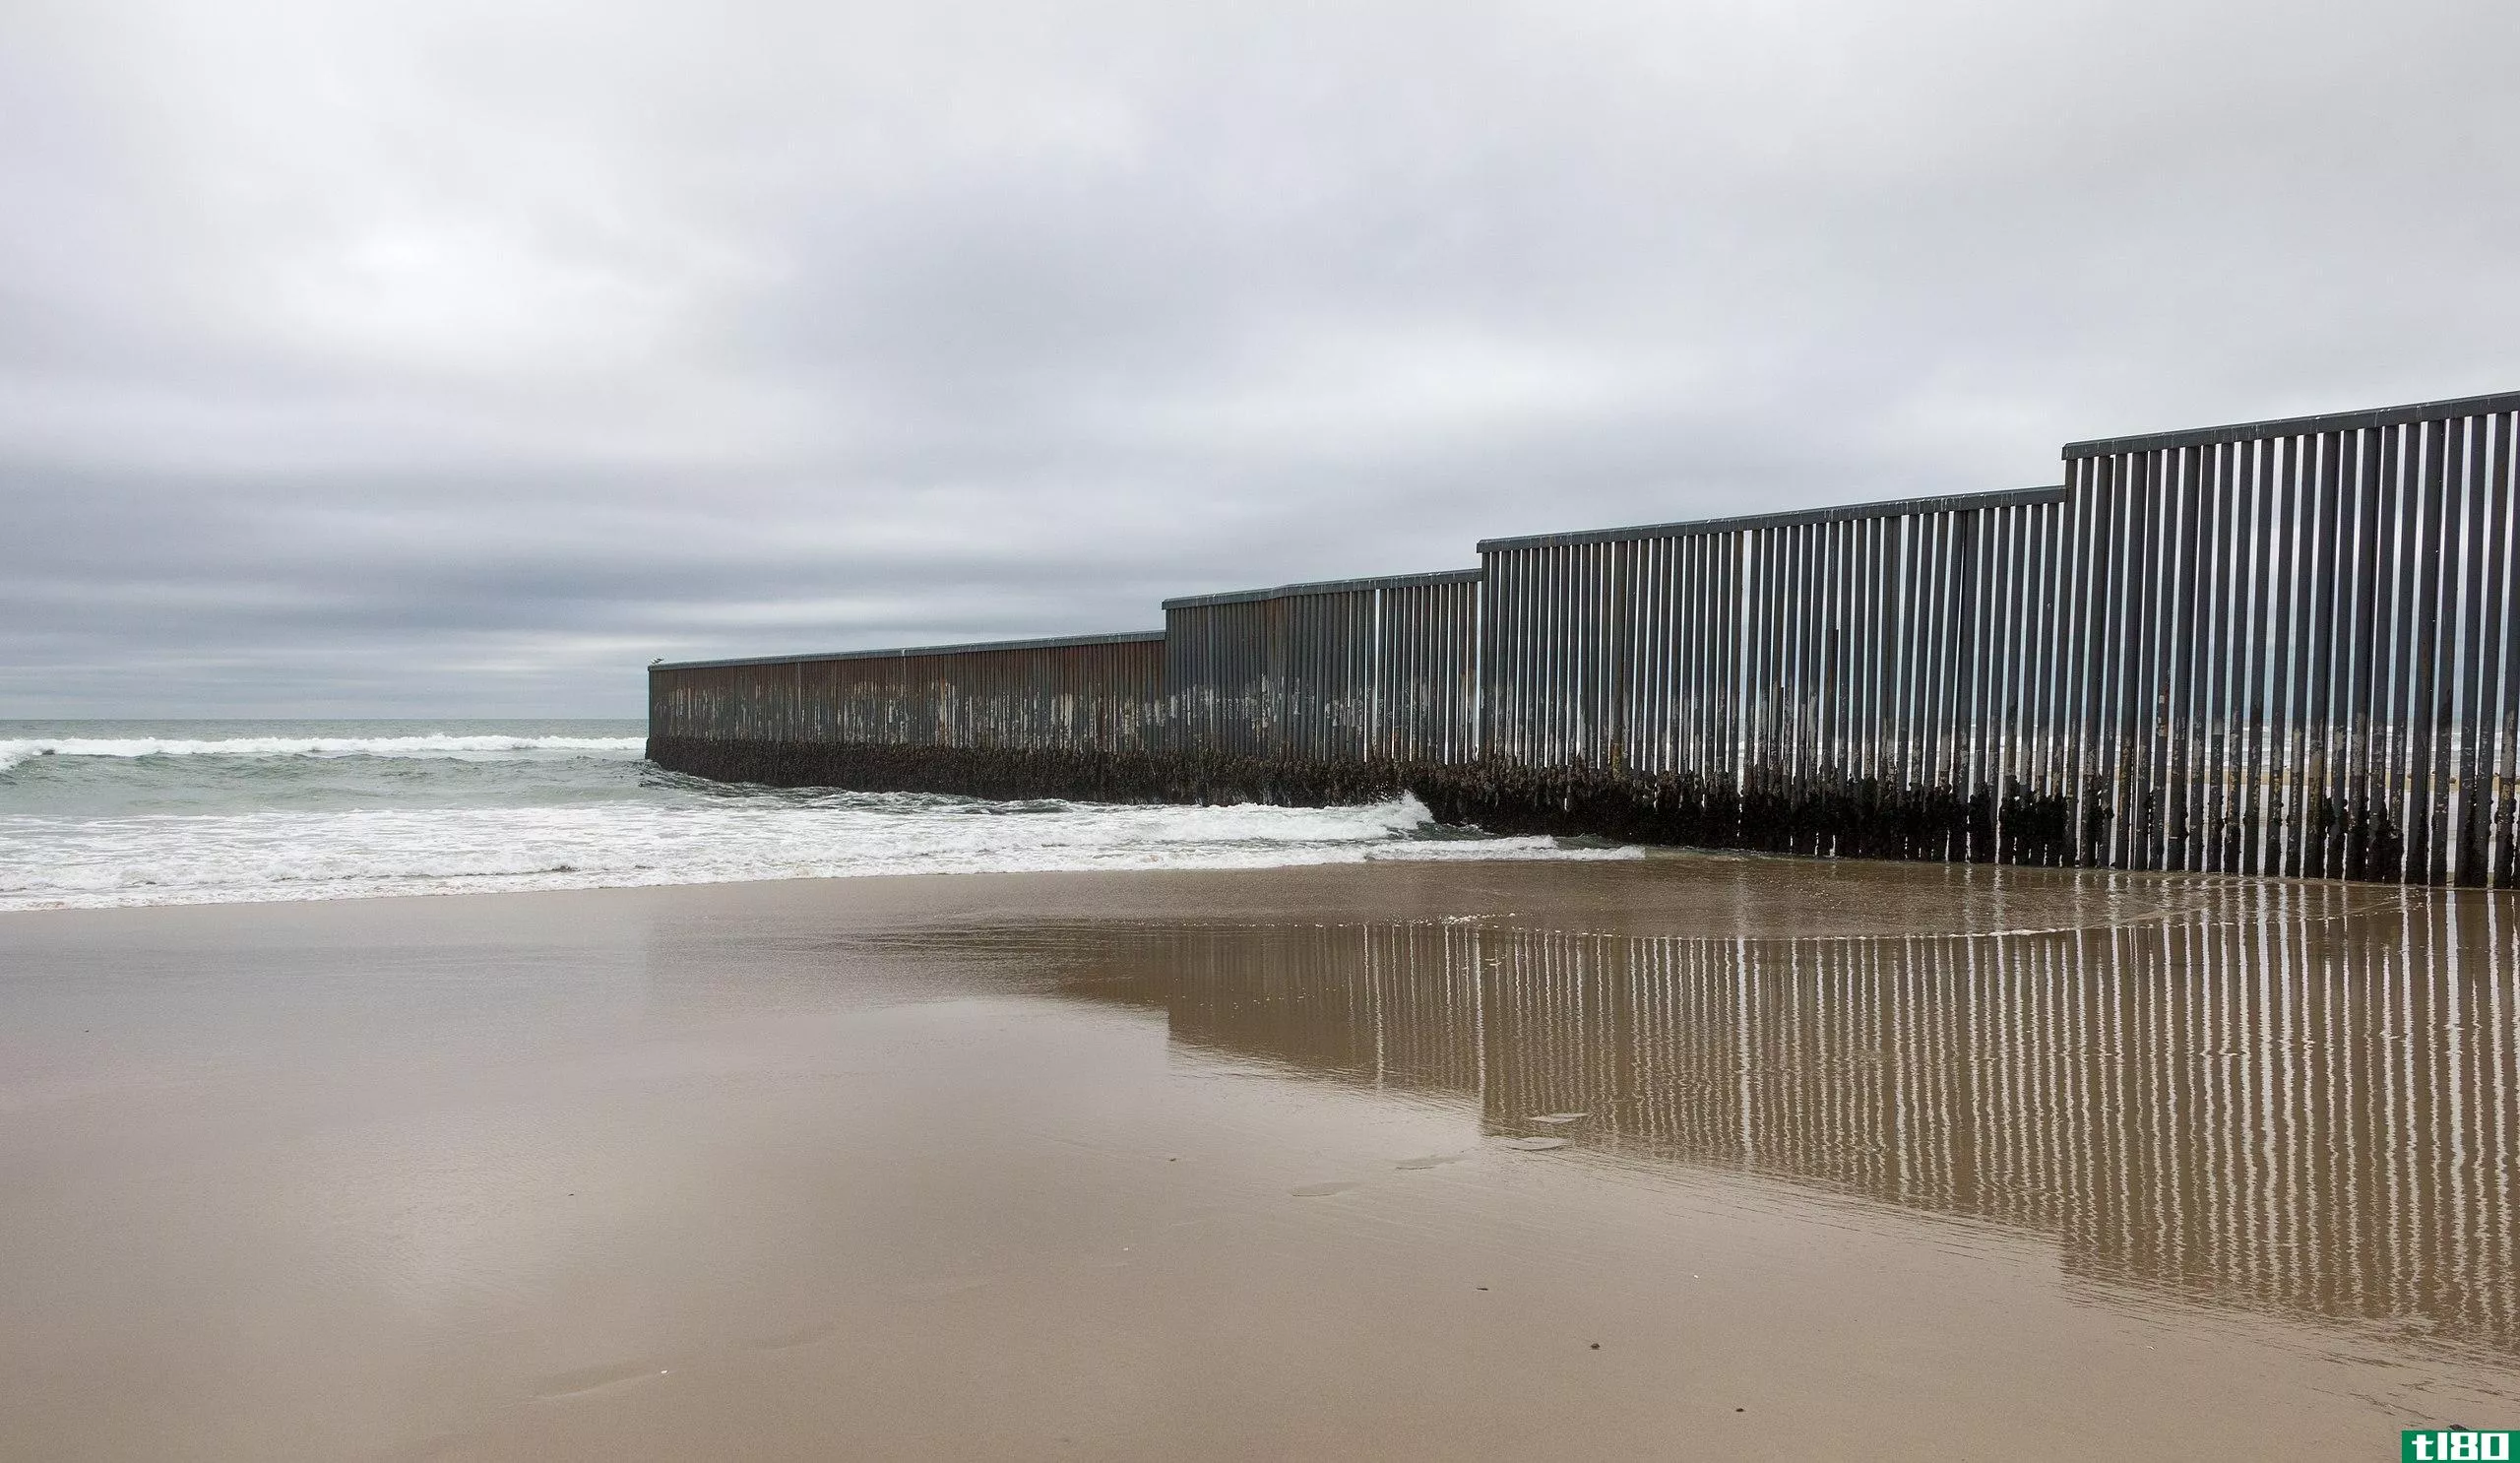 墨西哥墙(mexico wall)和柏林墙(the berlin wall)的区别